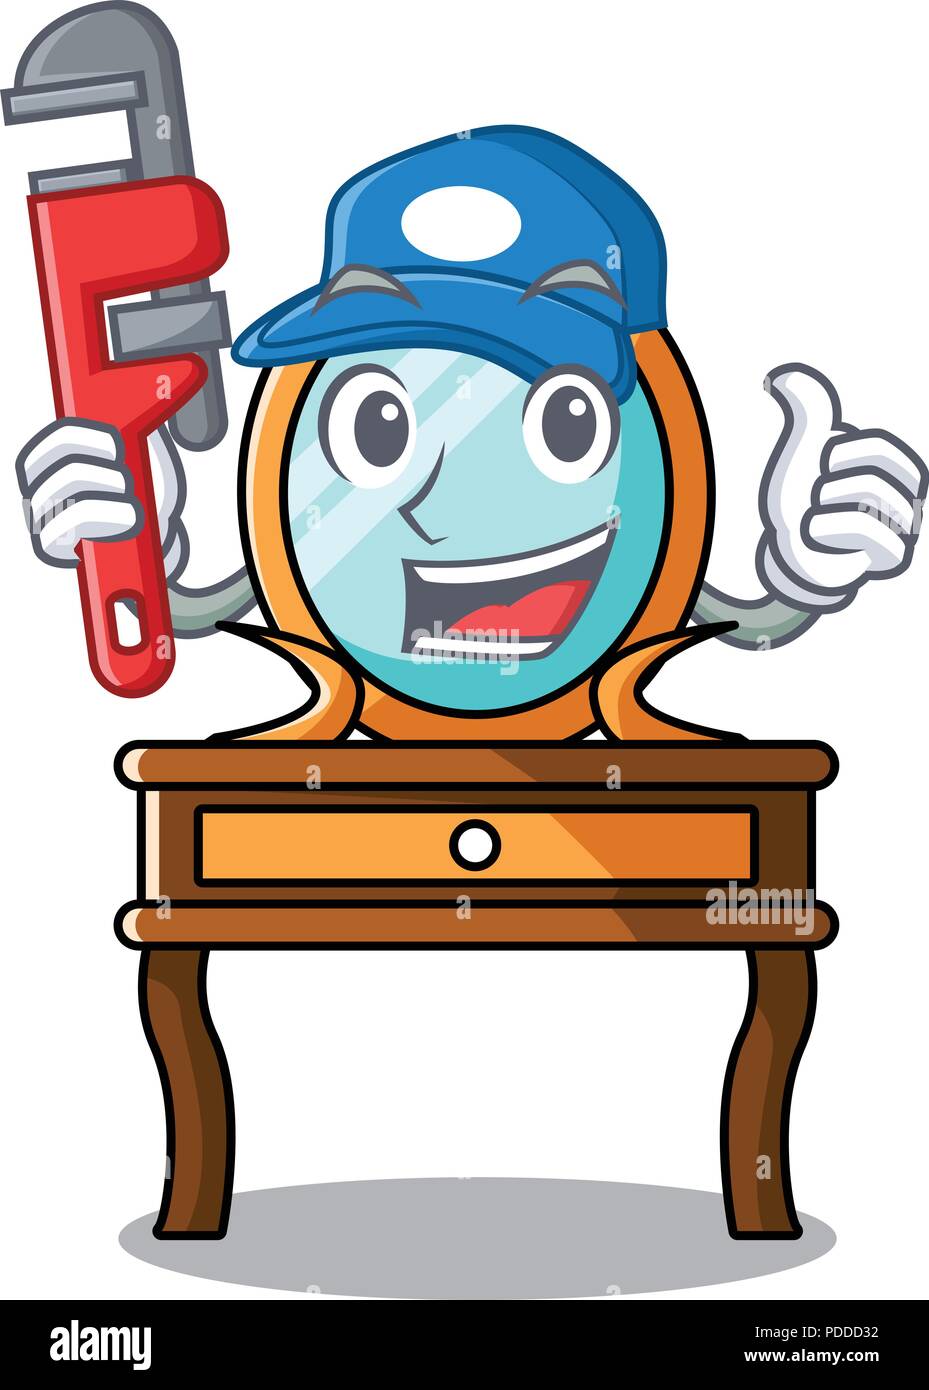 Plumber dressing table mascot cartoon Stock Vector